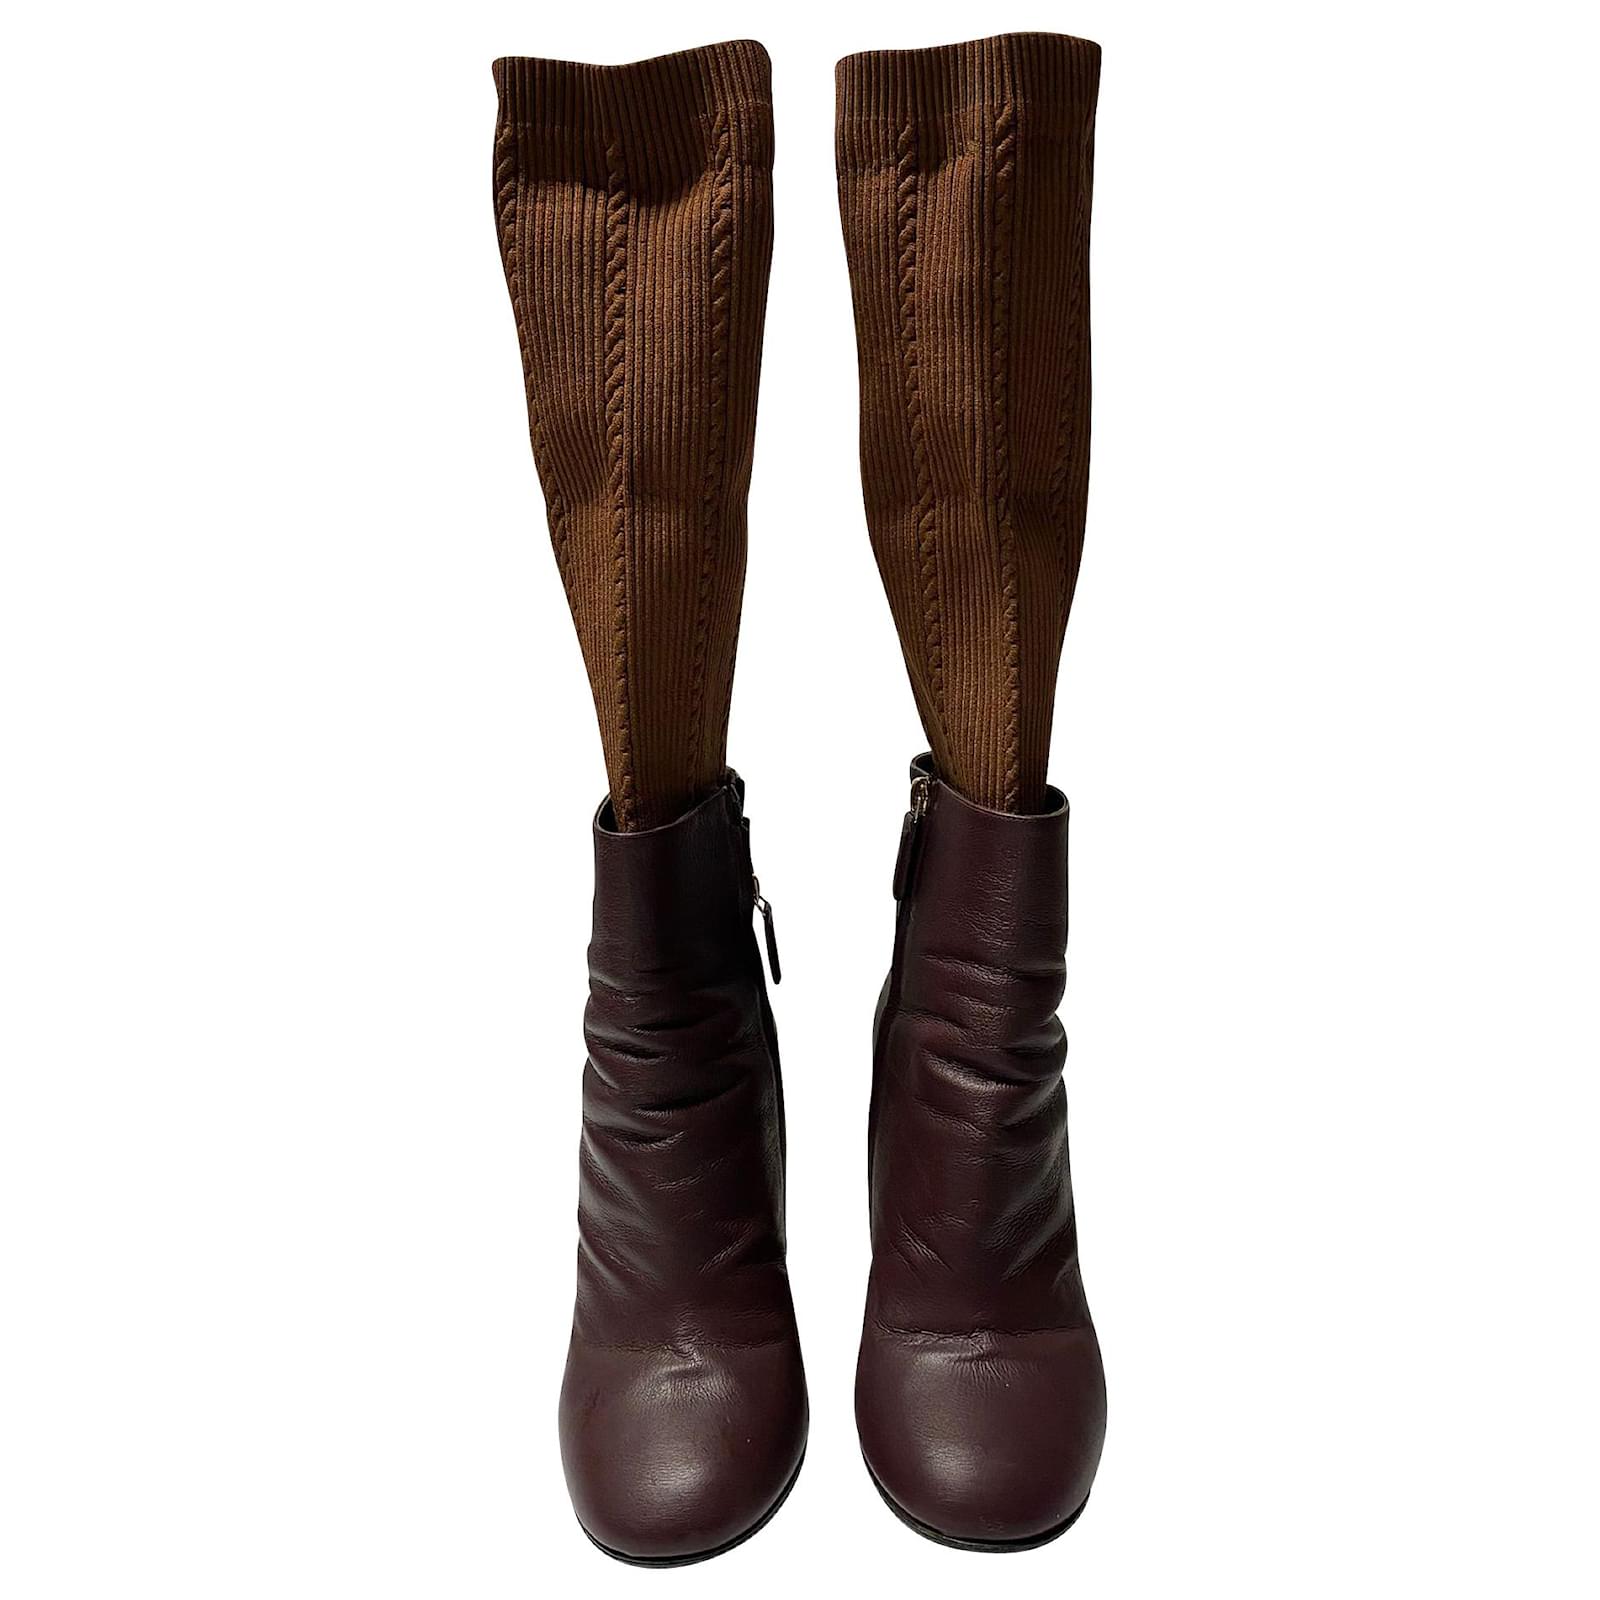 Top 98+ imagen burgundy chanel boots - Giaoduchtn.edu.vn